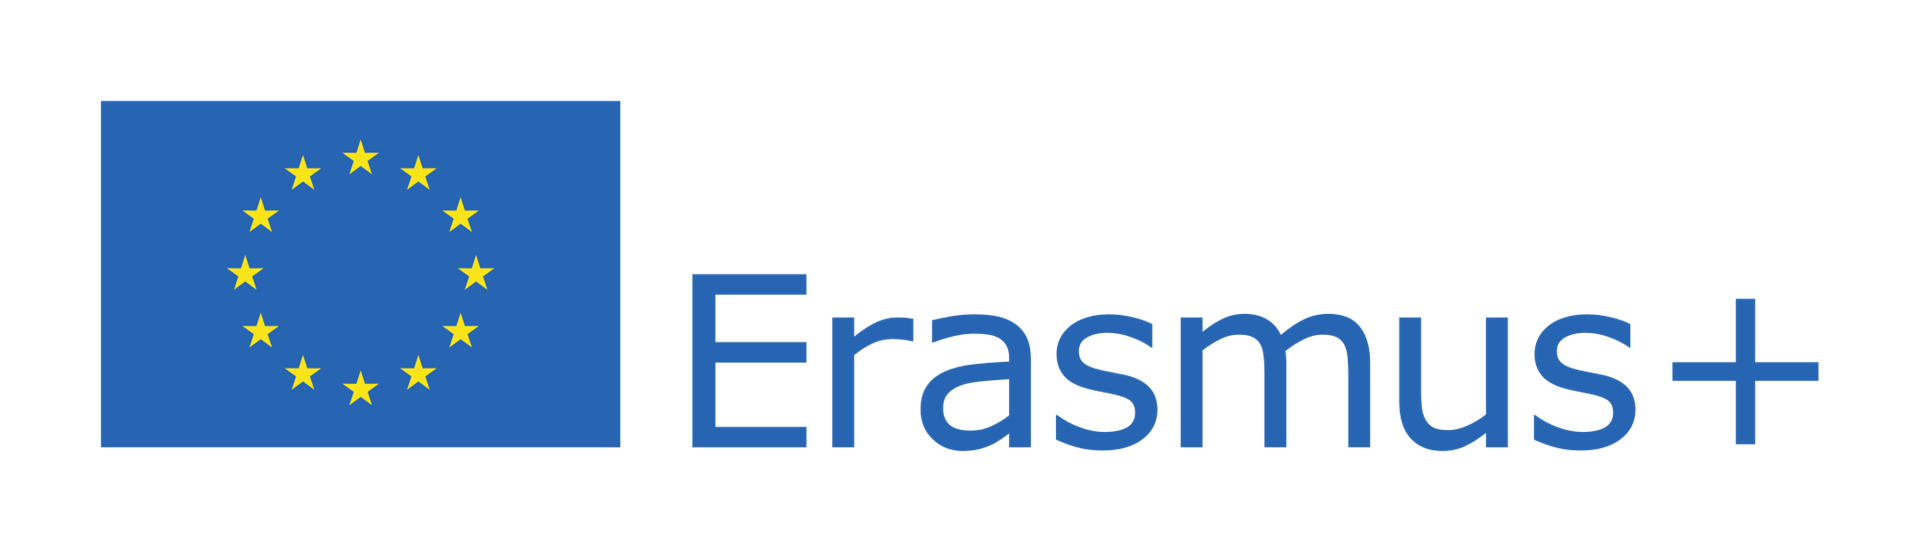 Erasmus +: 2,7 miliardi di euro per il bando generale 2019